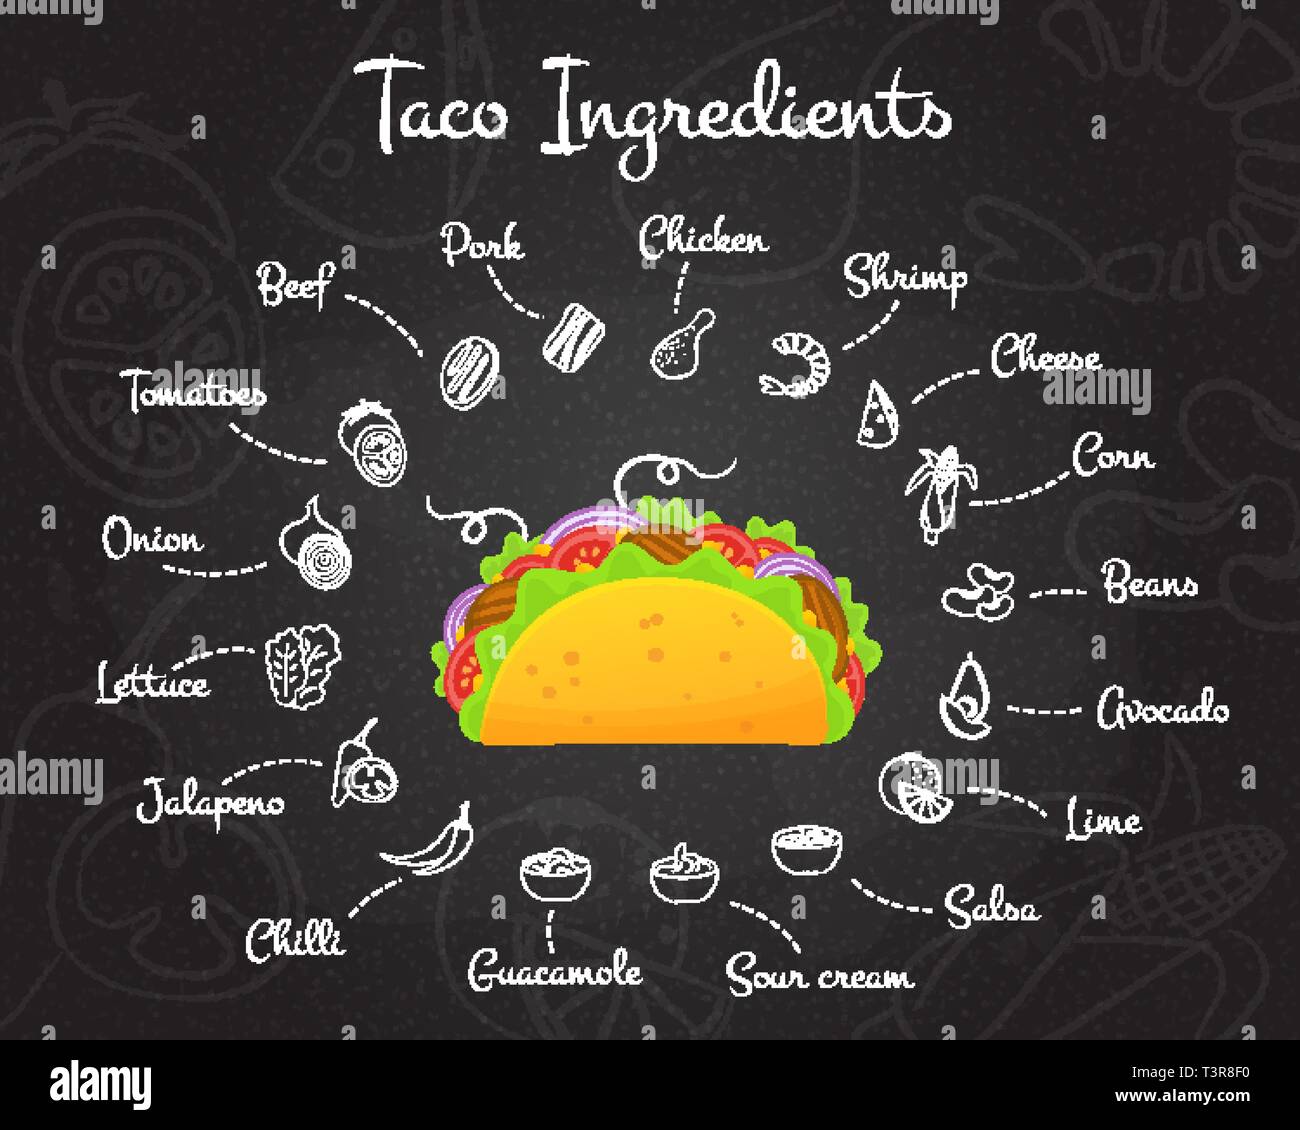 Fastfood tacos mexicanos receta menú constructor ilustración vectorial.  Chalk estilo dibujar a mano los ingredientes con sabrosa carne de vacuno,  ensalada de tomate y deliciosa receta de taco de menú o construcción